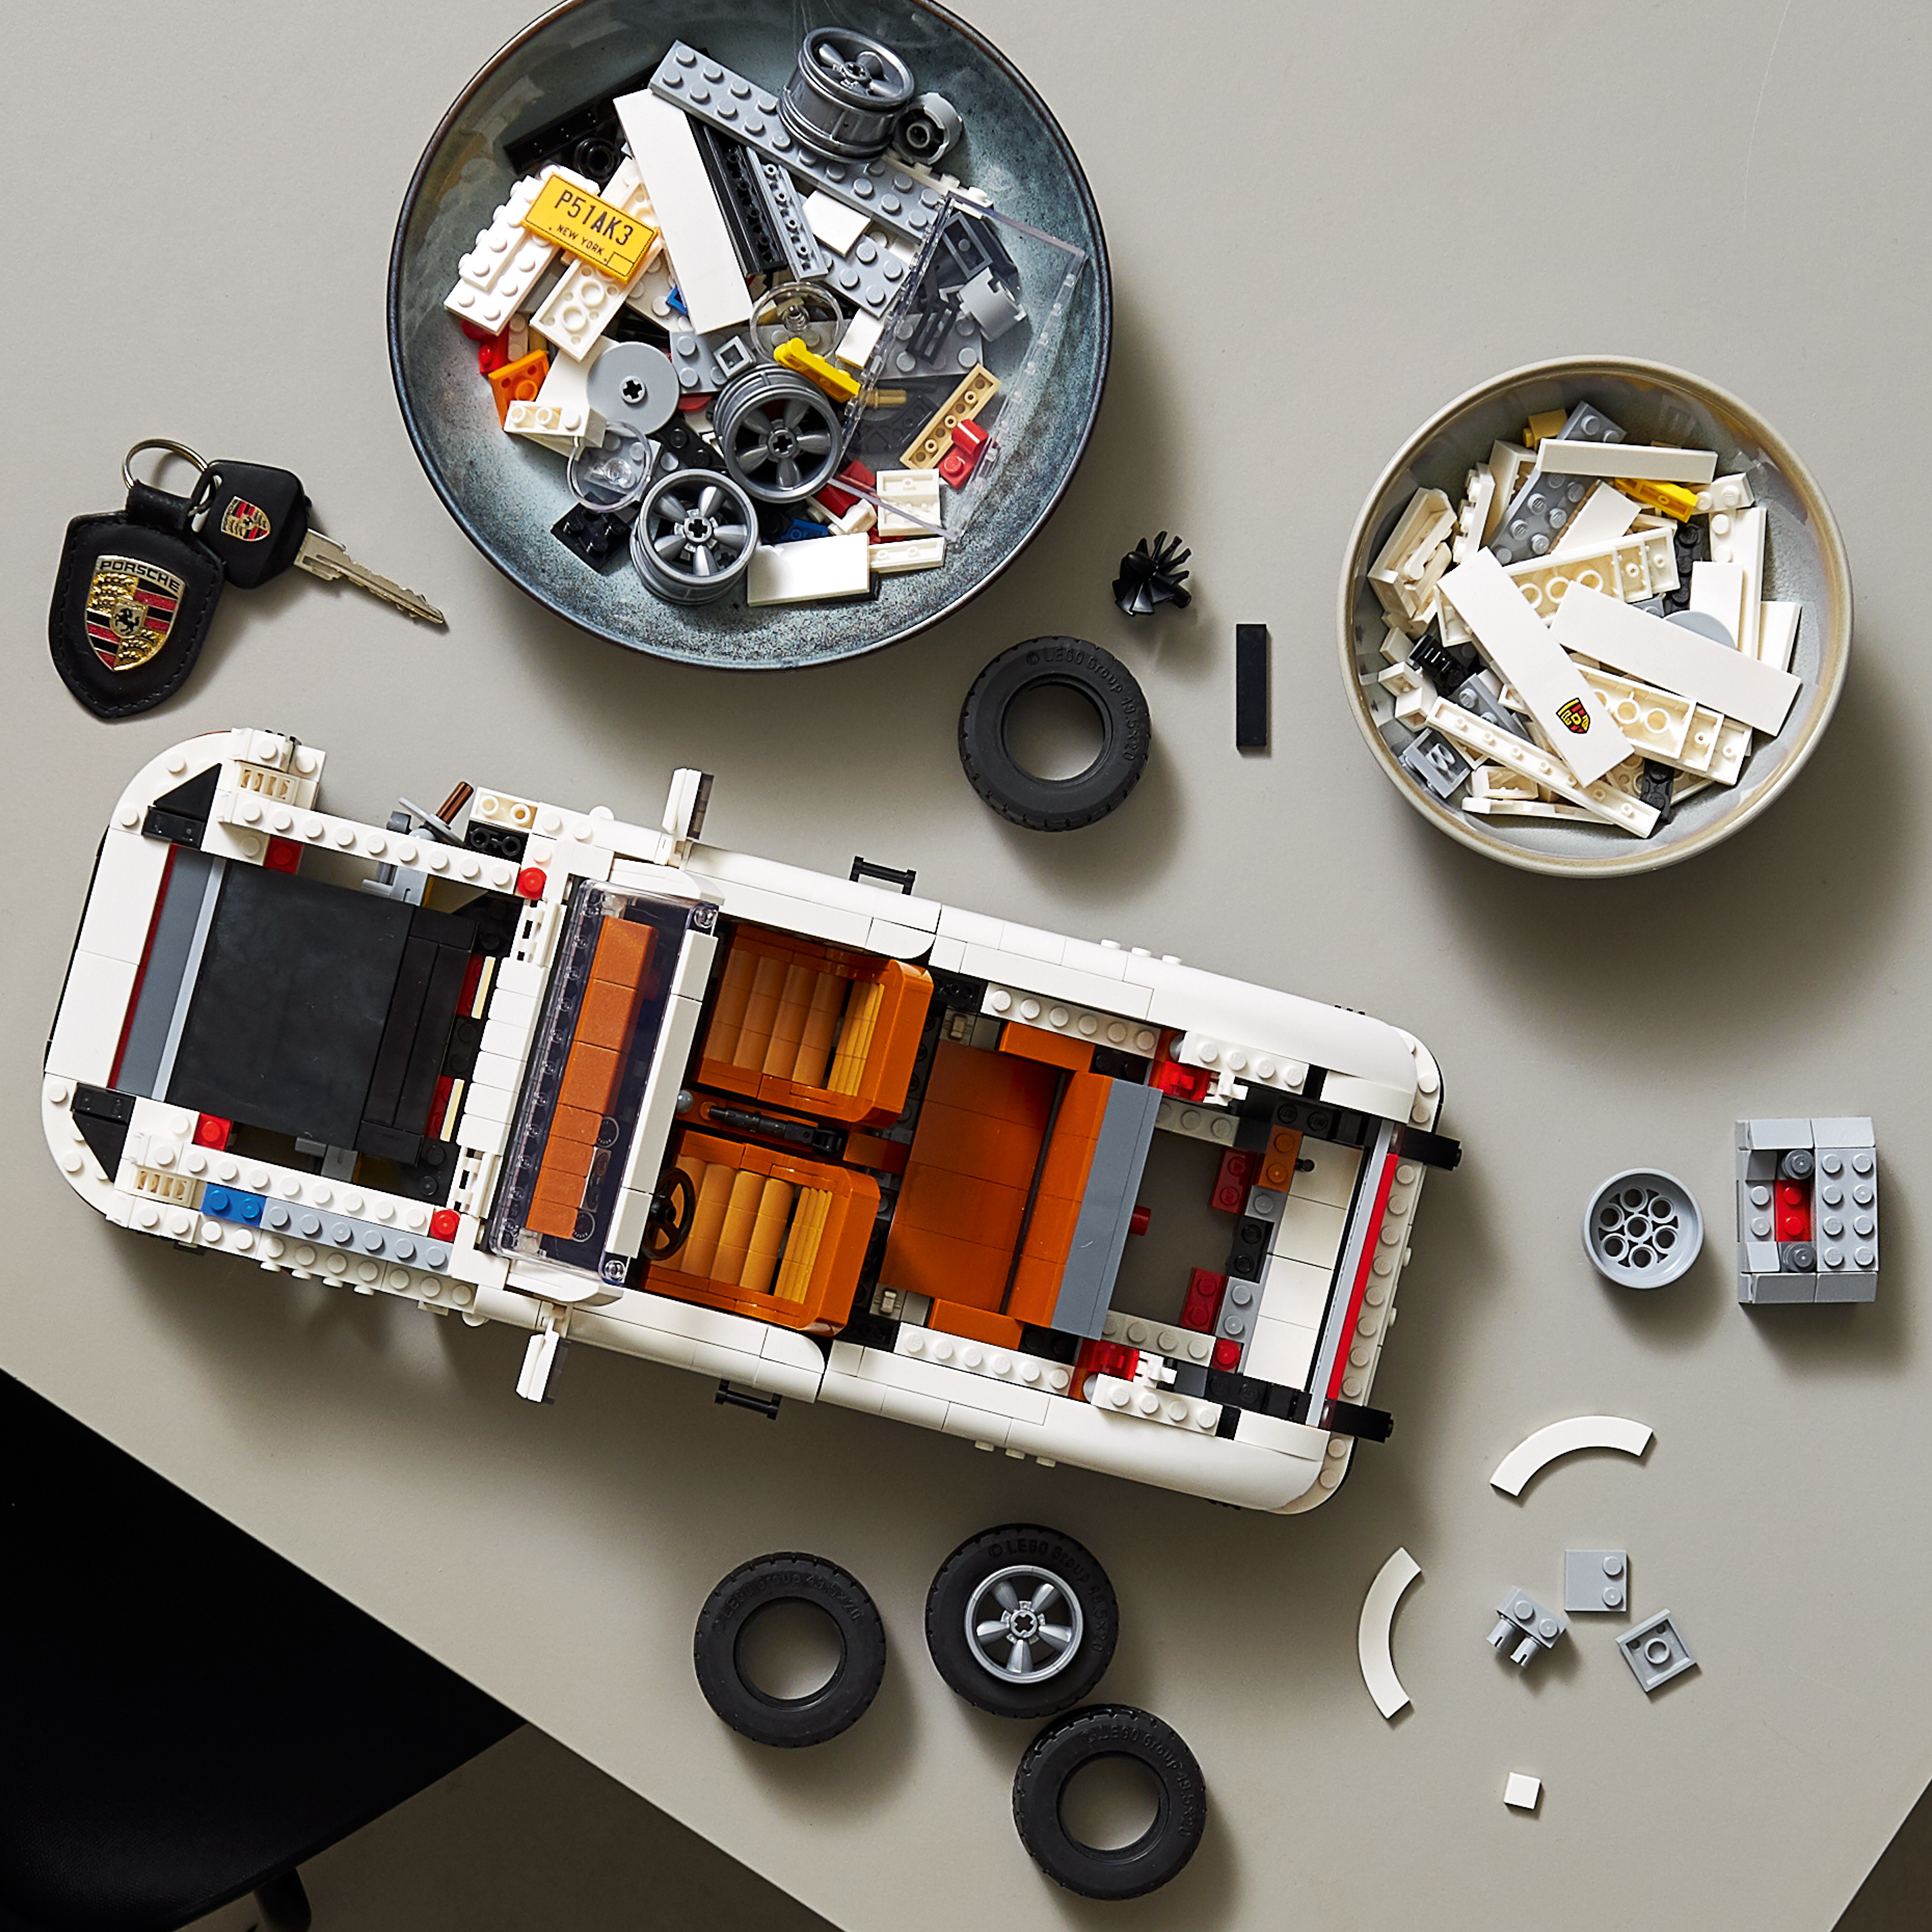 LEGO Porsche - About Us 